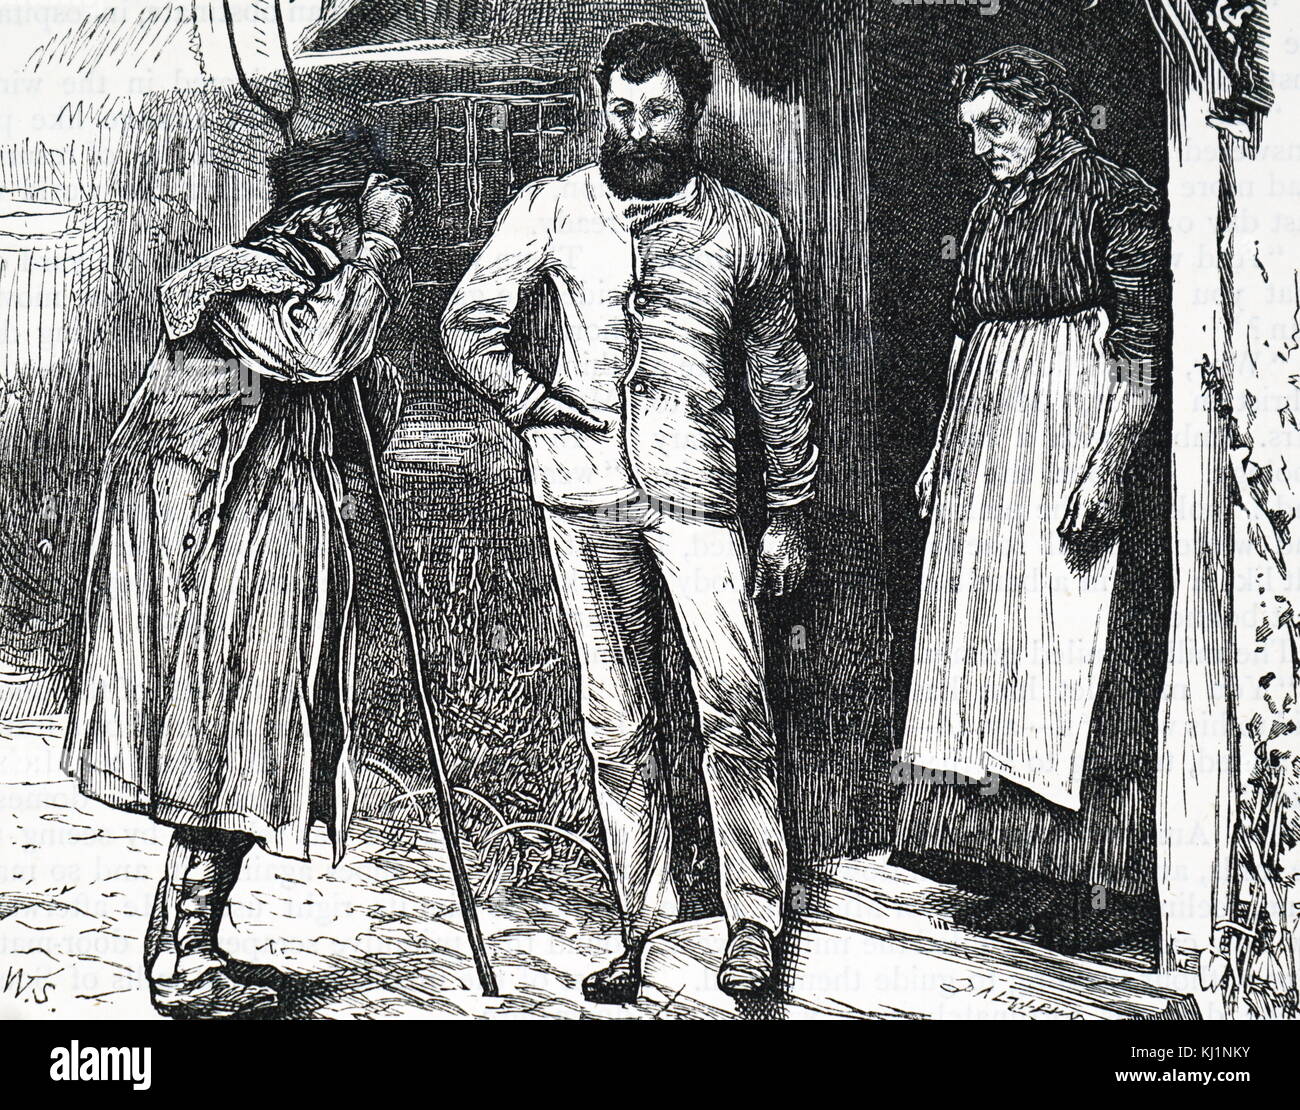 Kupferstich mit der Darstellung eines Landarbeiter mit einer Heugabel, während ich mit einigen der Stadtbewohner. Vom 19. Jahrhundert Stockfoto